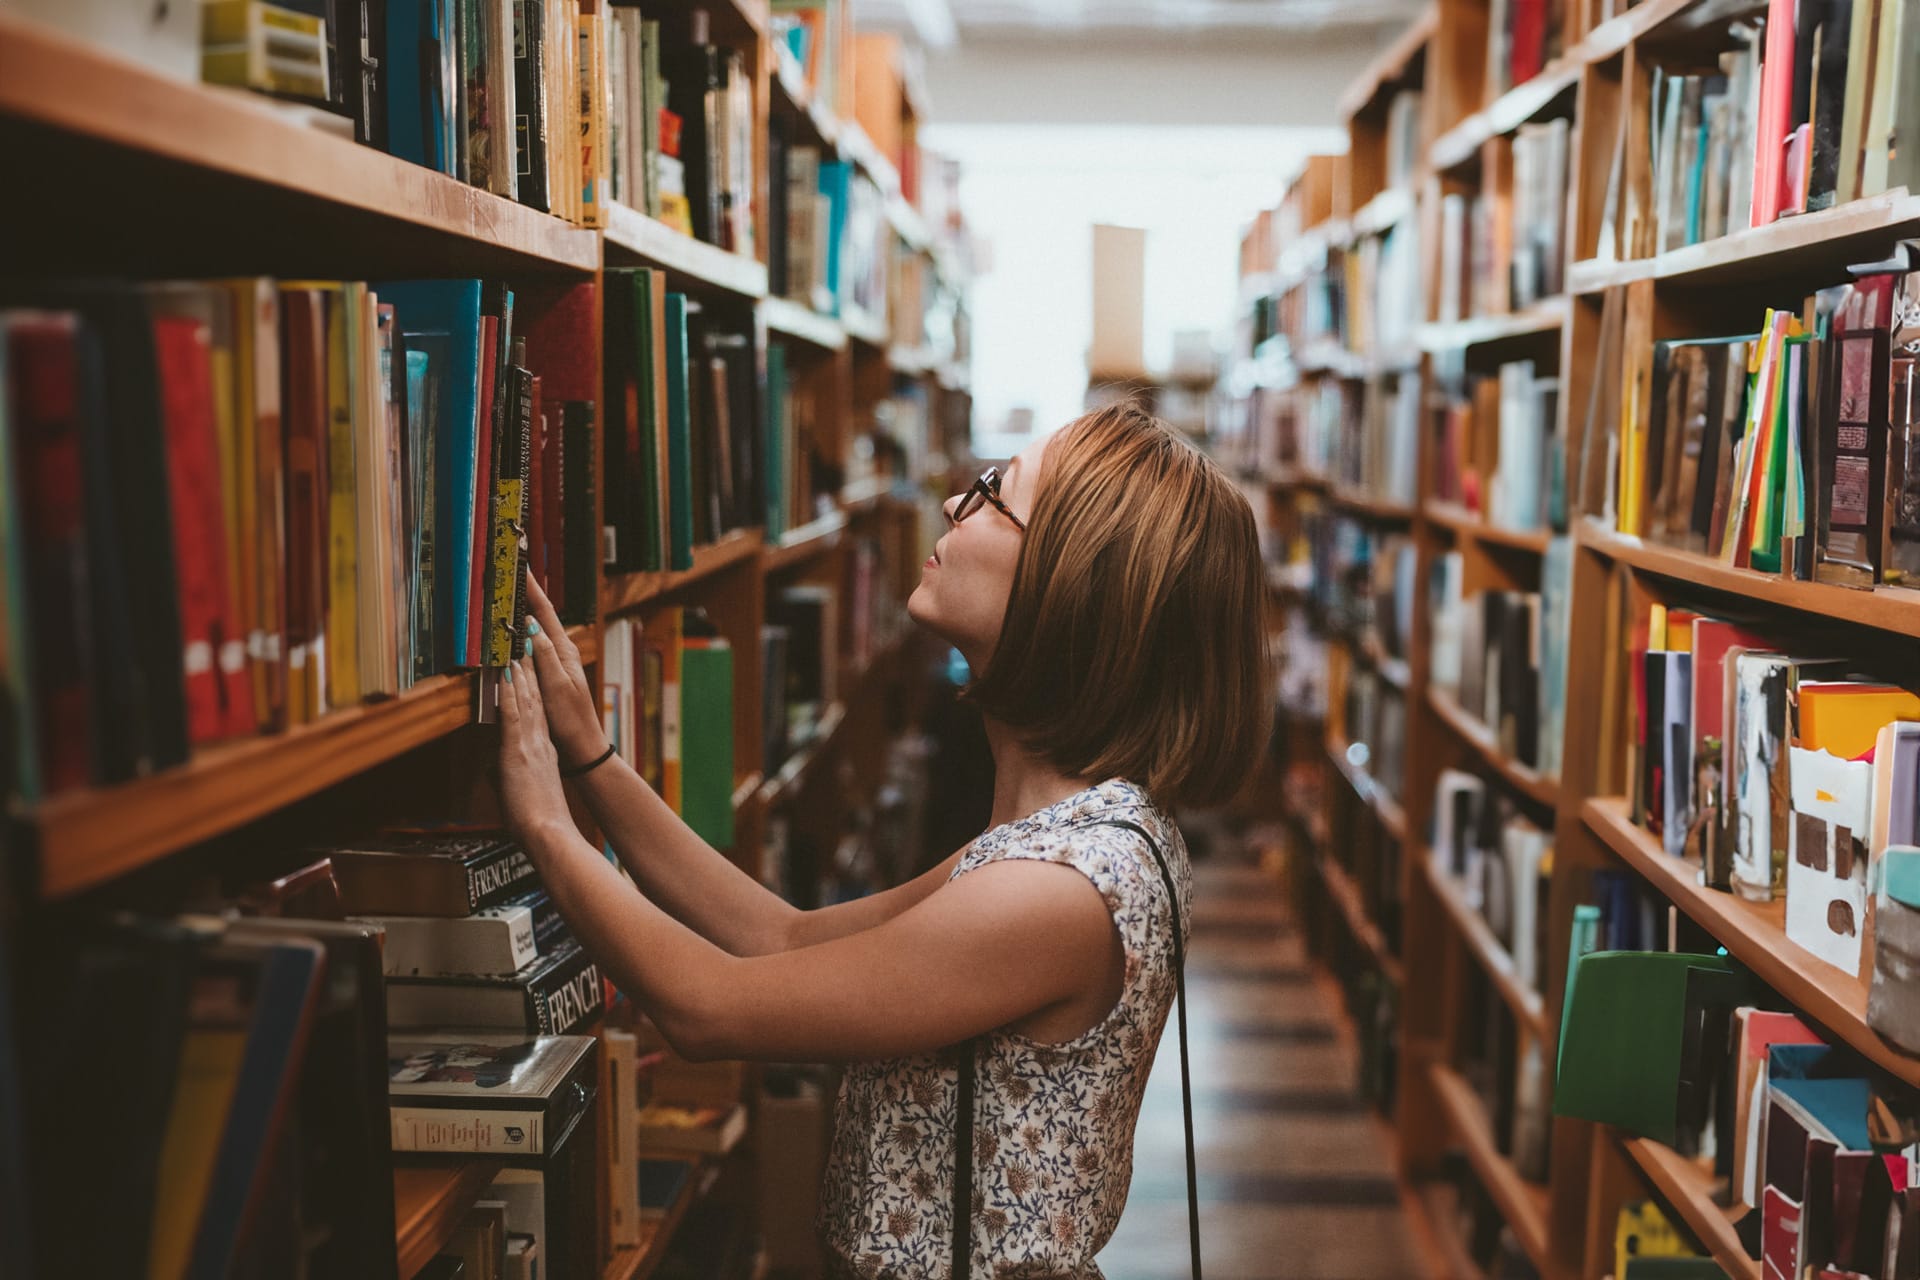 Feminism Library ผู้หญิงกับห้องสมุด การต่อสู้เพื่อสิทธิ ความรู้ และความเท่าเทียม